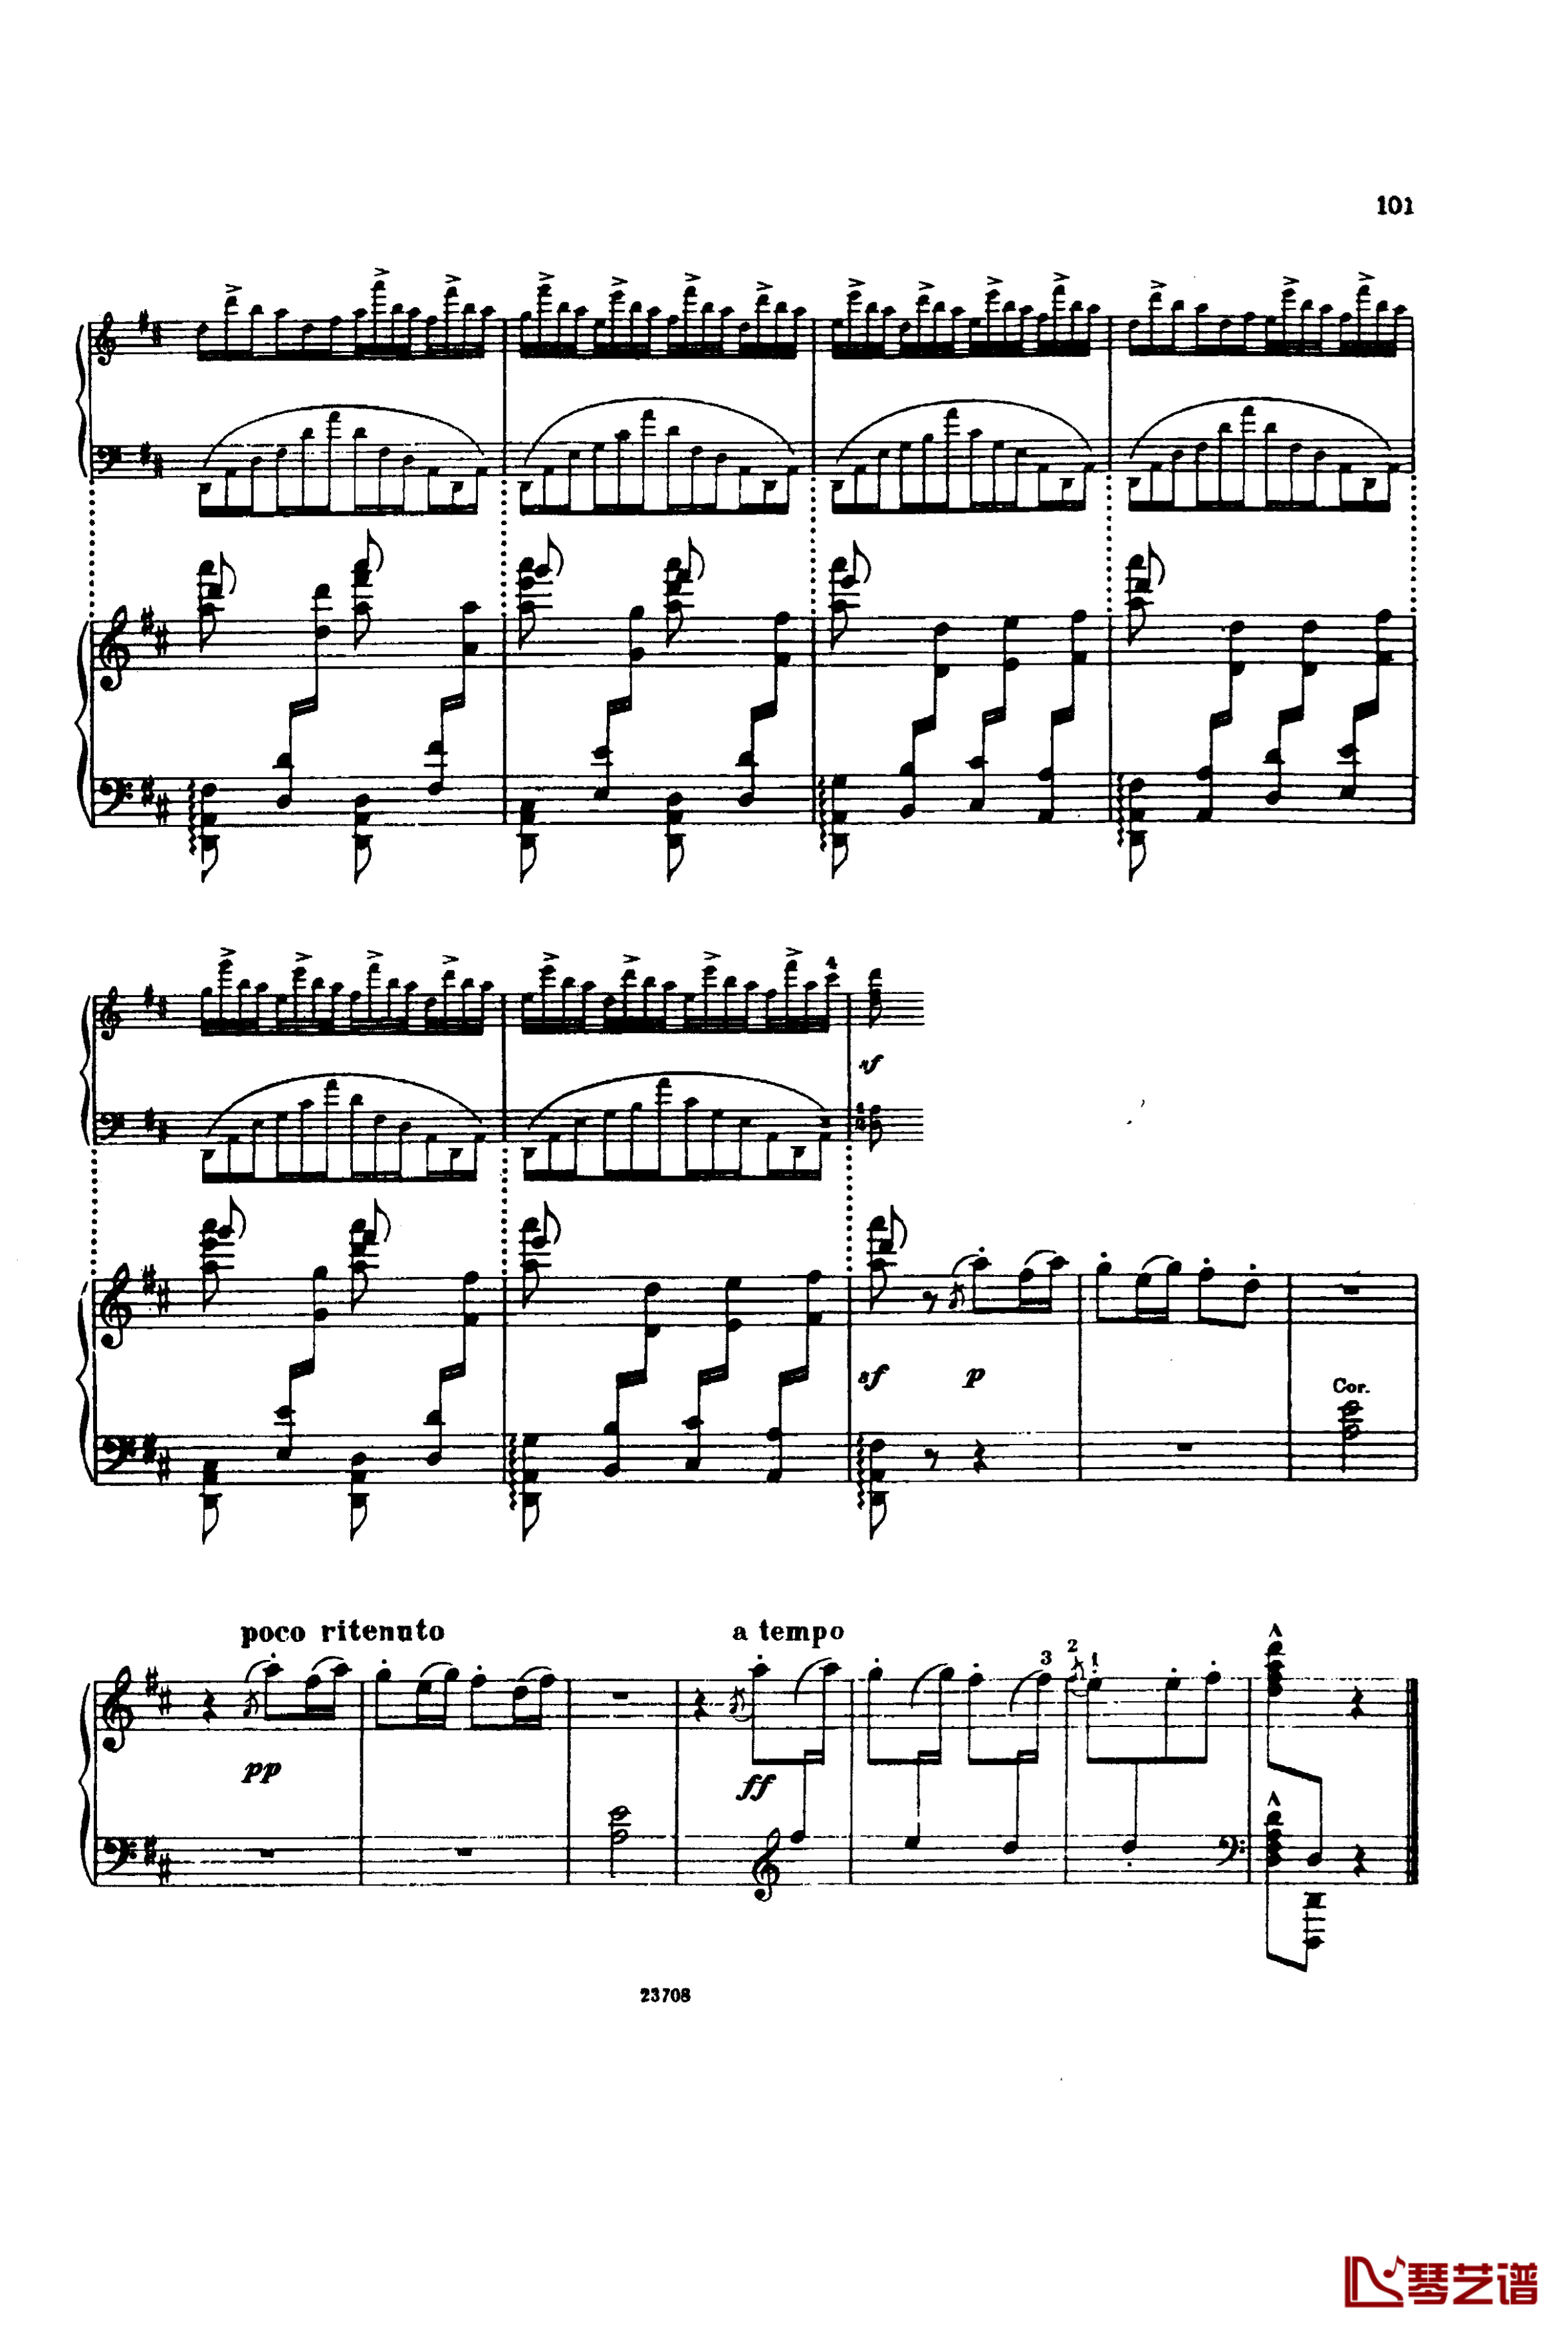 卡玛林斯卡亚幻想曲钢琴谱-格林卡15